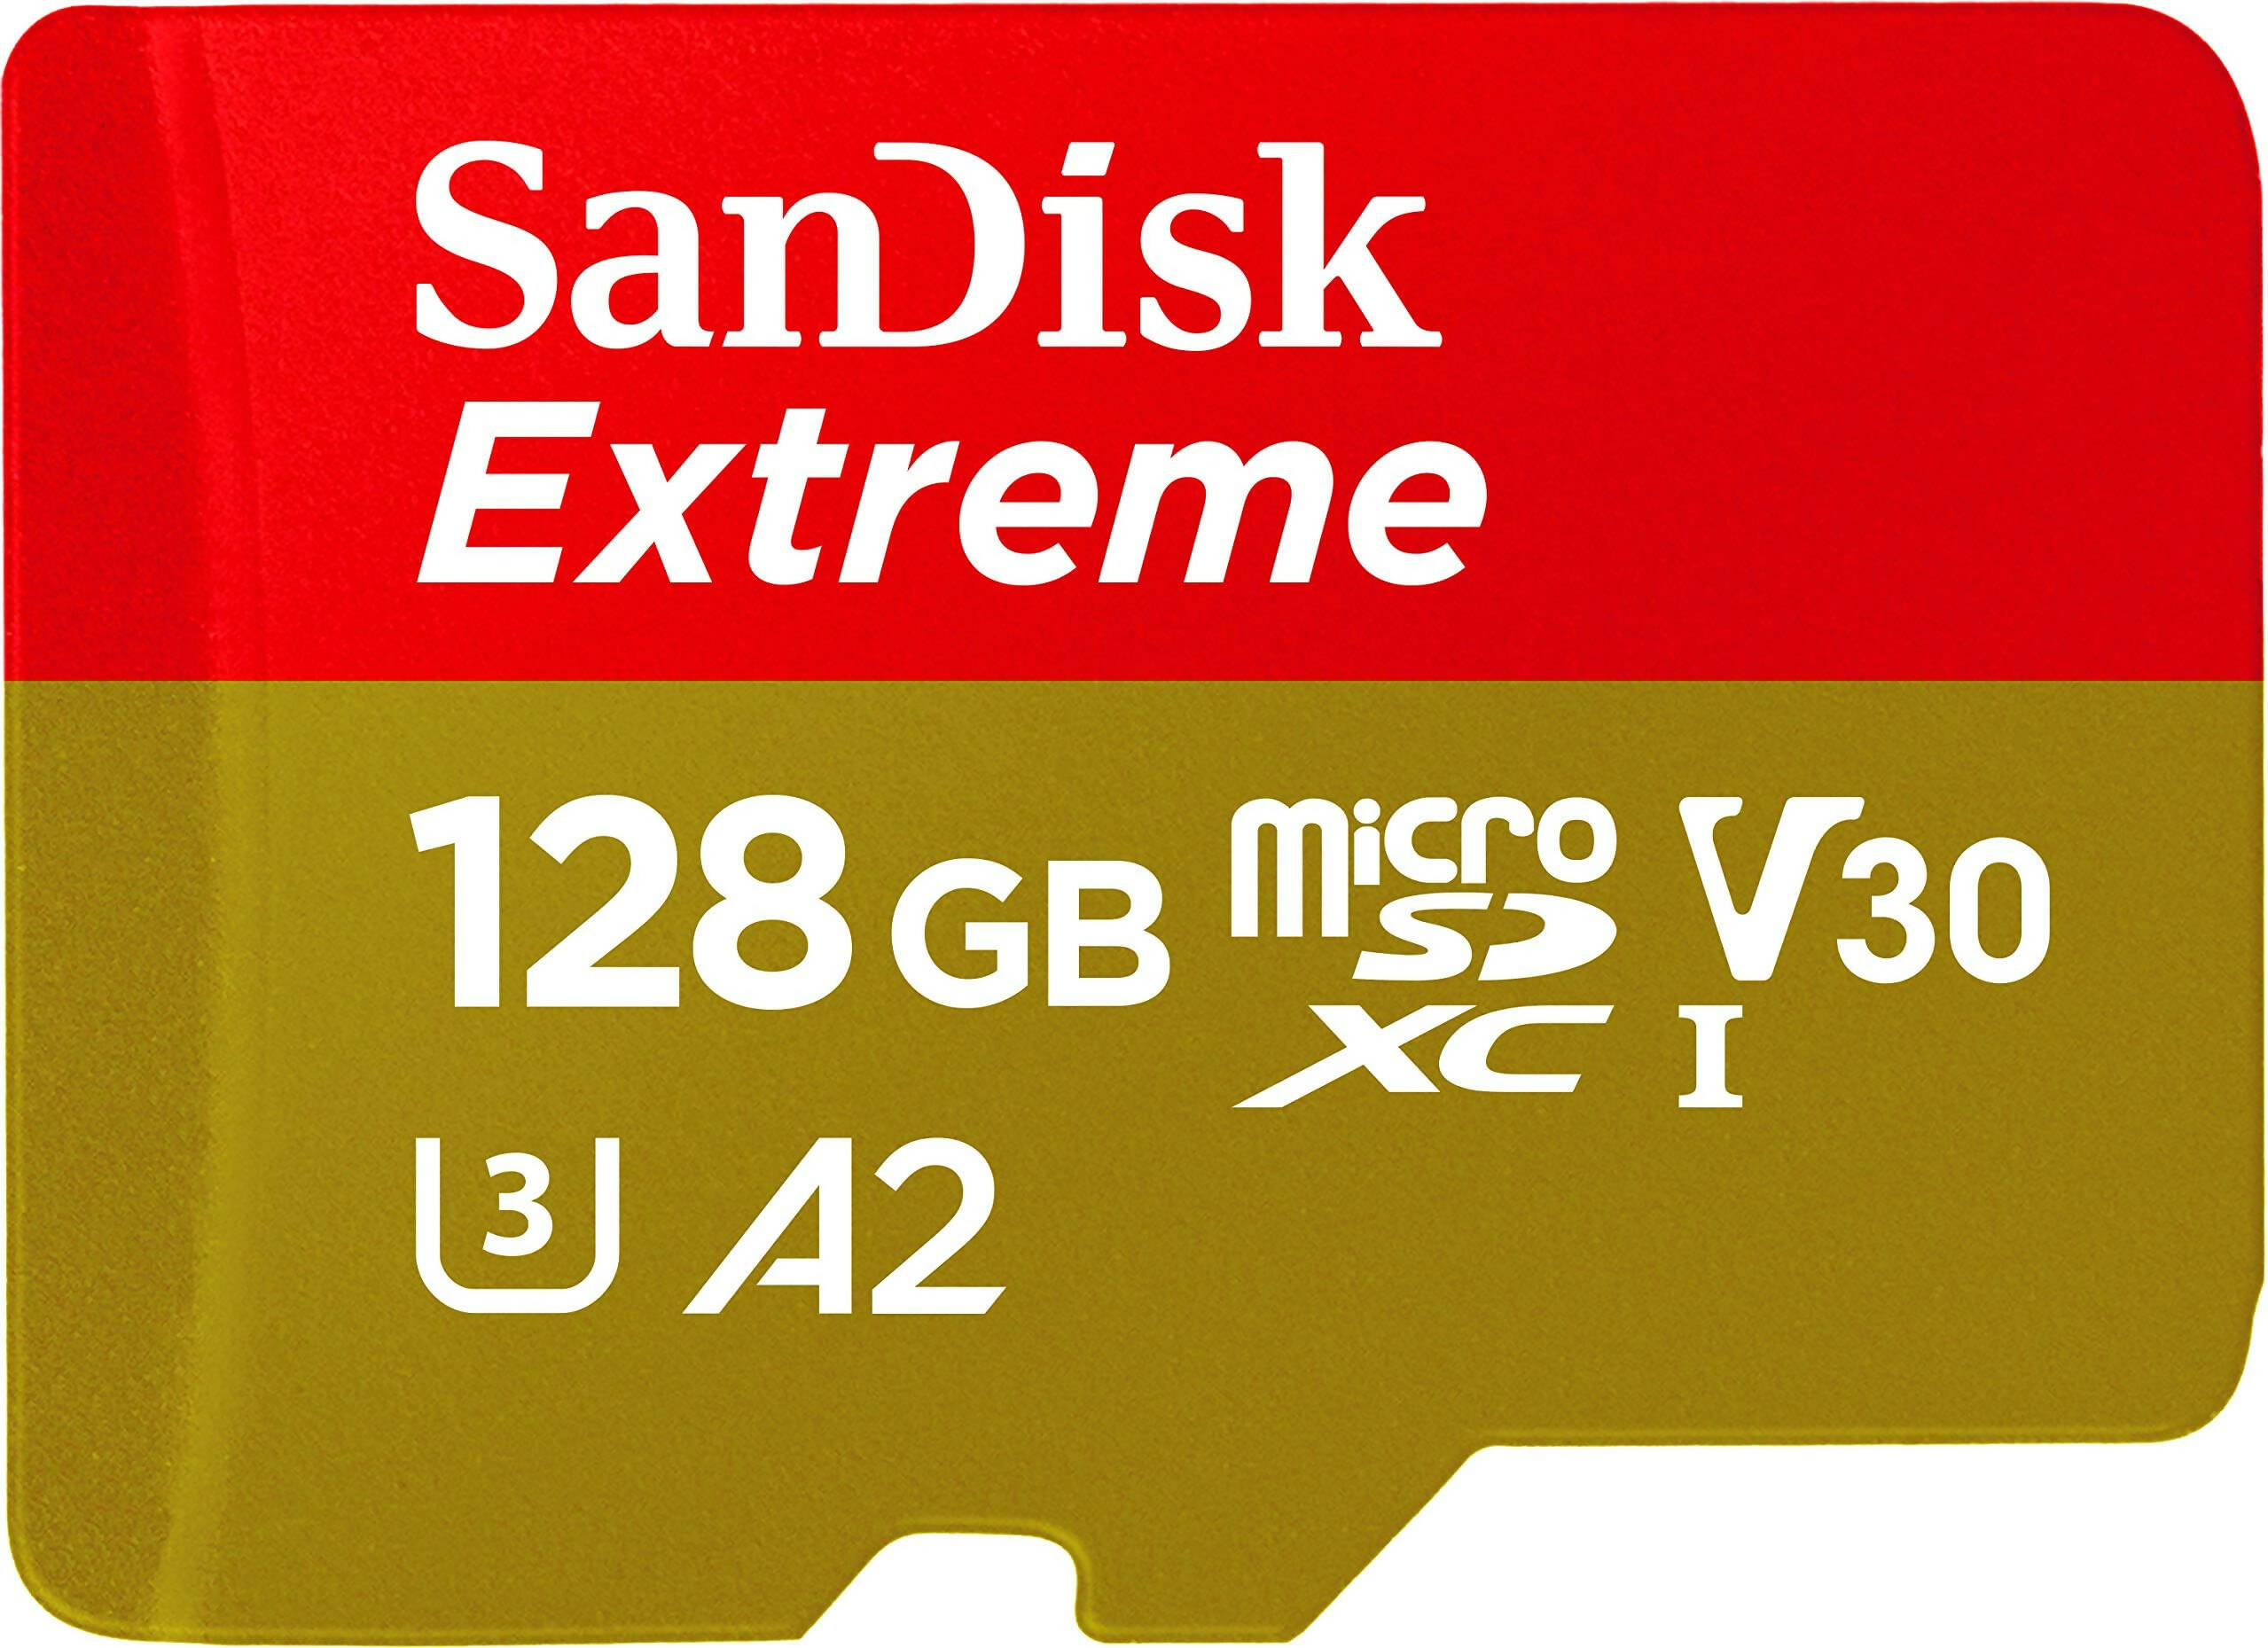 SanDisk Extreme microSDXC UHS-I Card - 128GB